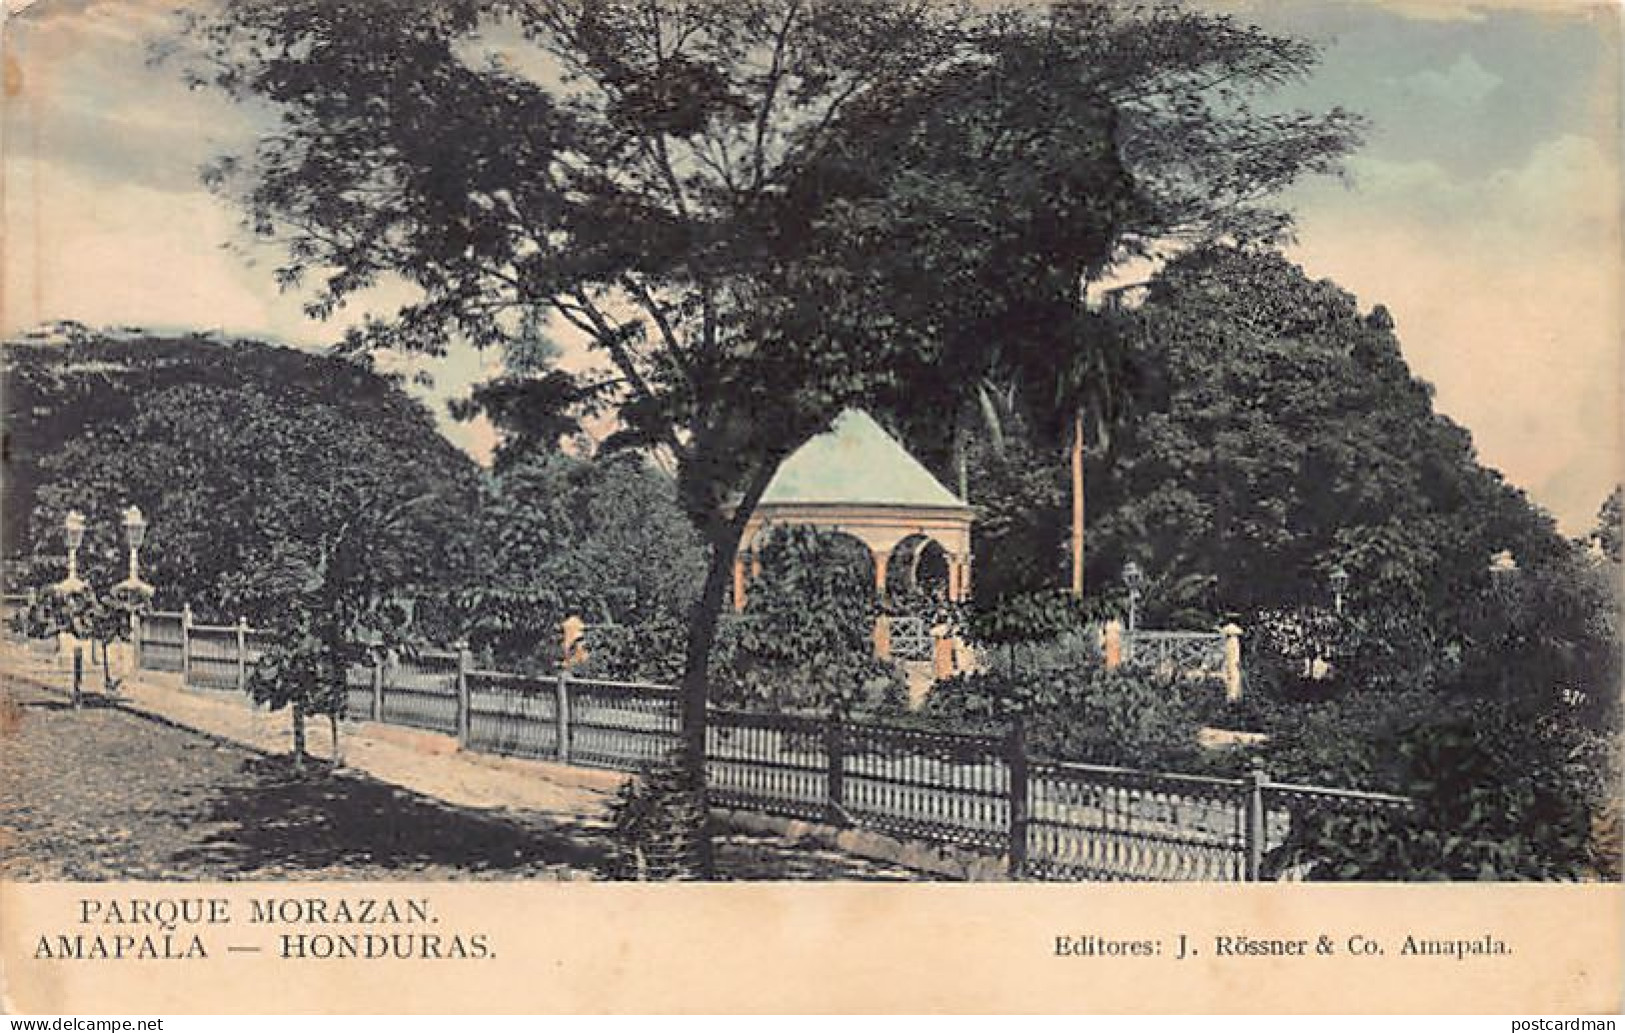 Honduras - AMPALA - Parque Morazan - Publ. J. Rössner & Co.  - Honduras